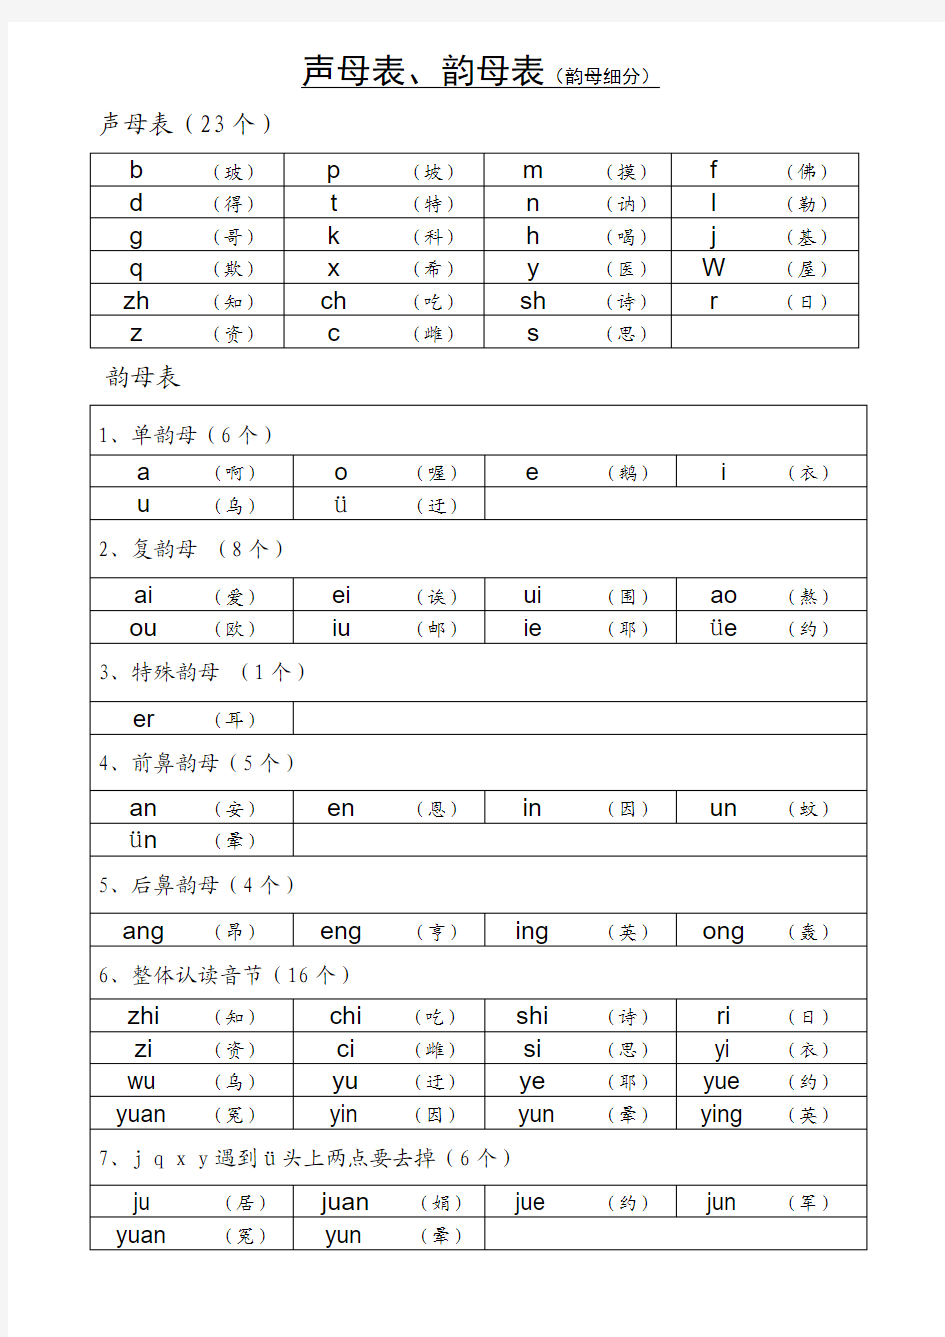 2012最新声母表和韵母表汉语拼音音节表(排版清晰、内容准确_便于孩子或成人自学)